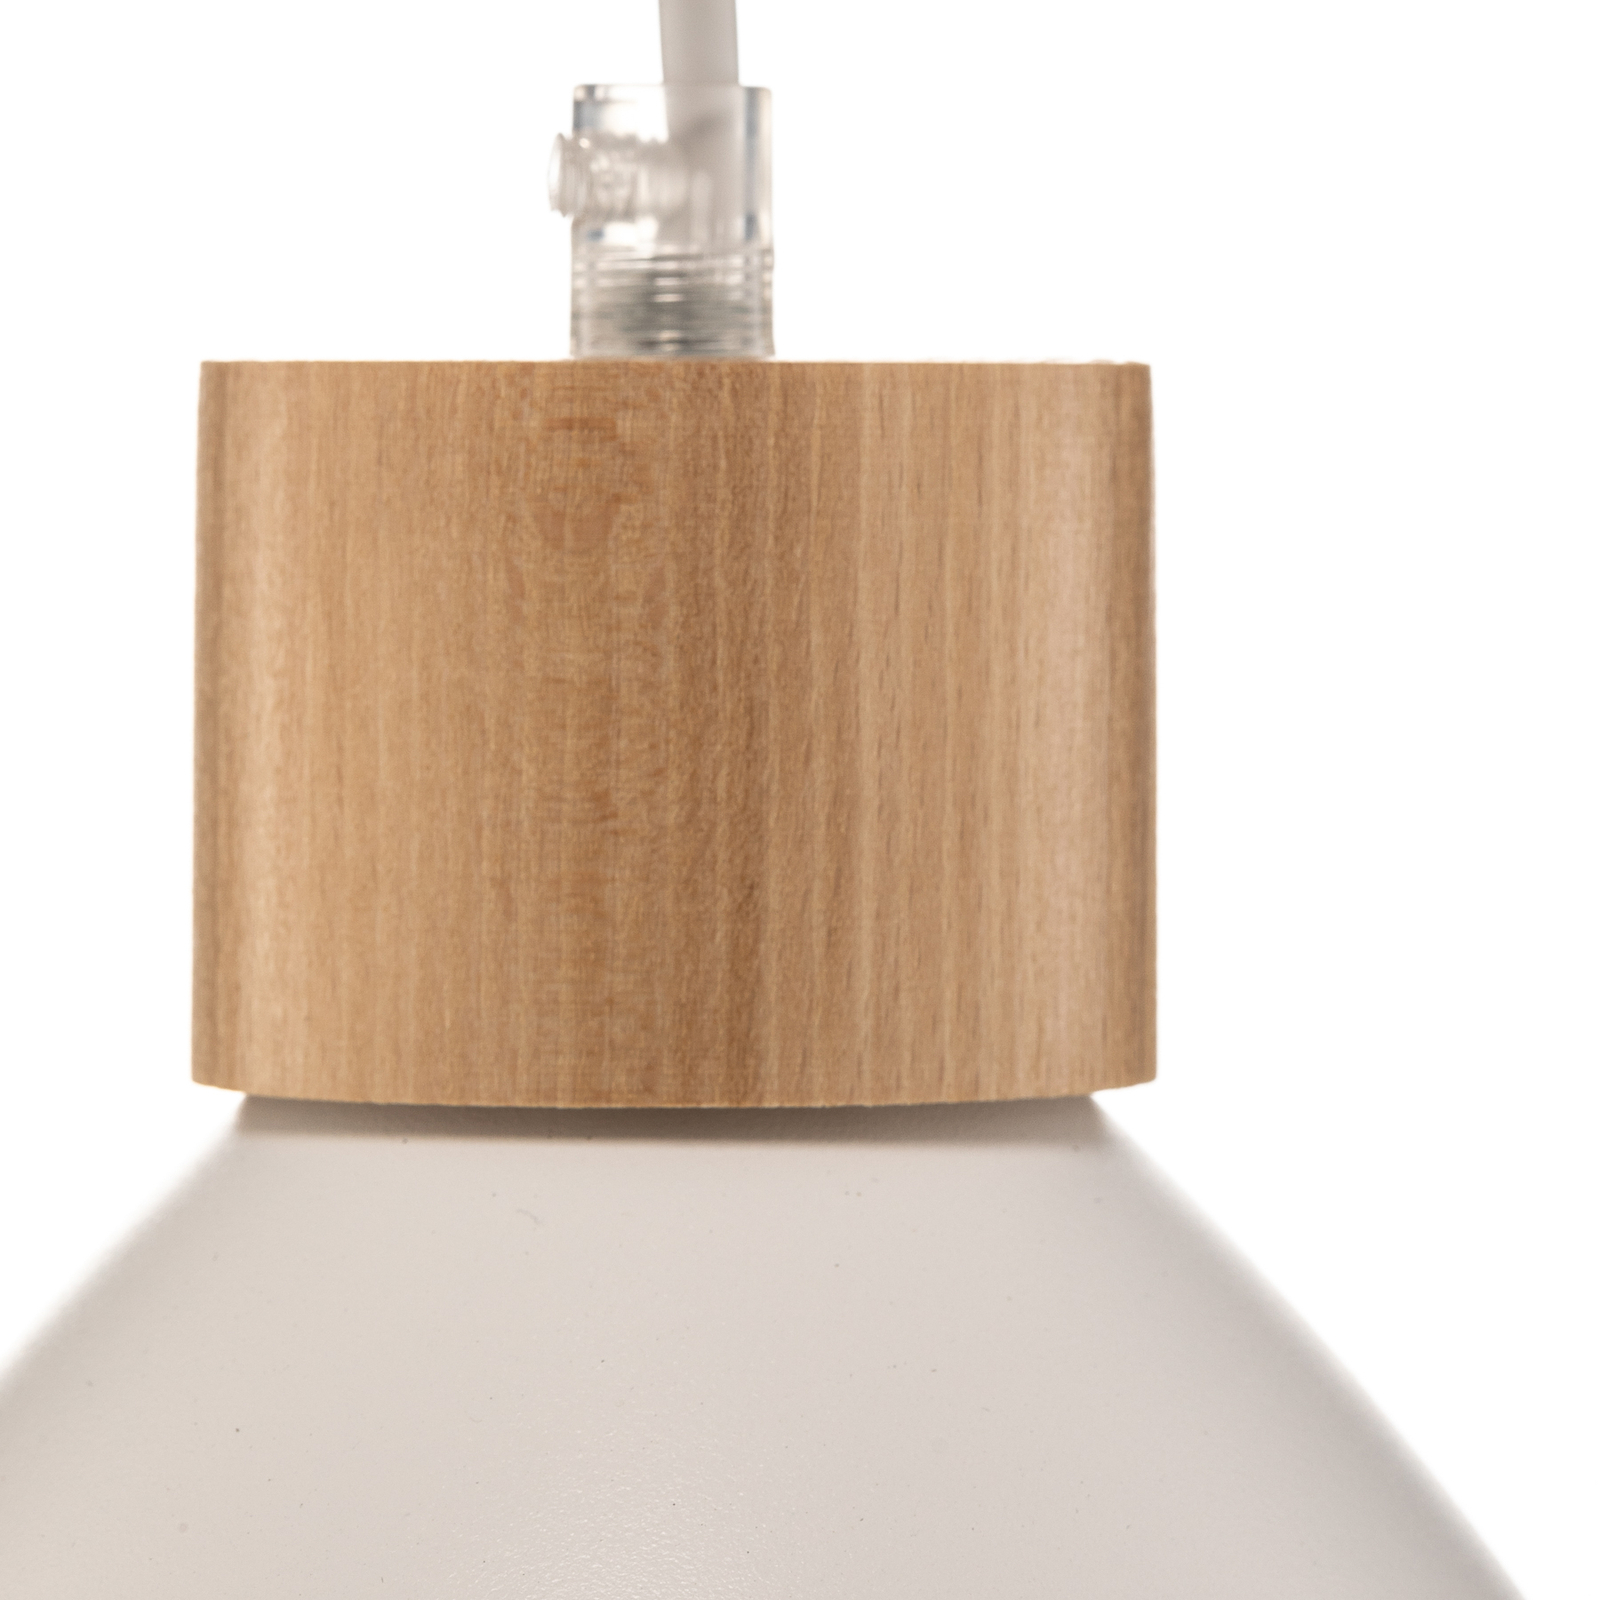 Envostar Tira pendant light, 1-bulb, white